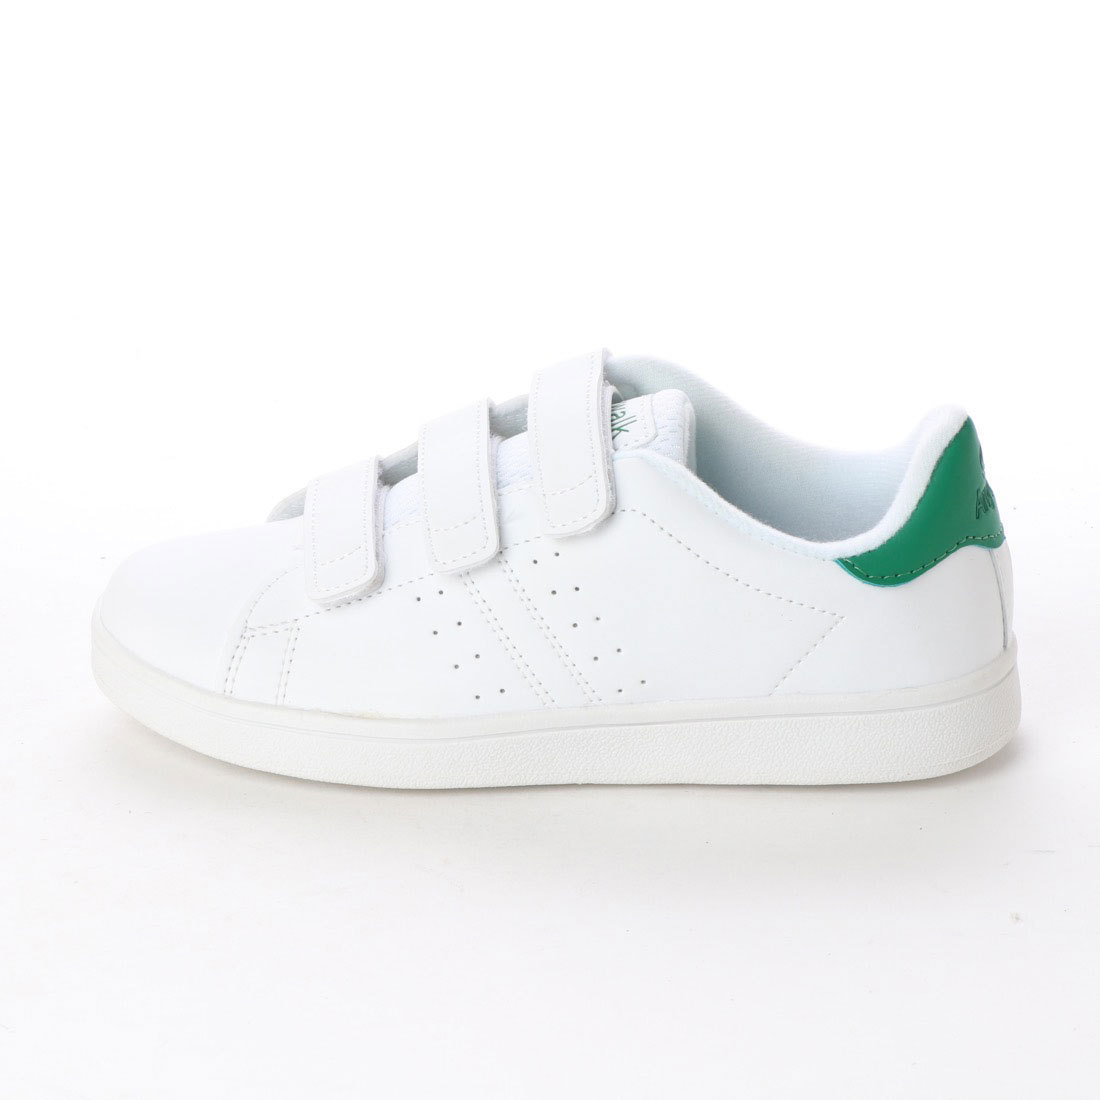  липучка обувь спортивные туфли cup стелька текстильная застёжка уличный белый зеленый белый зеленый 18559-wht-grn-245 ( 24.5cm )